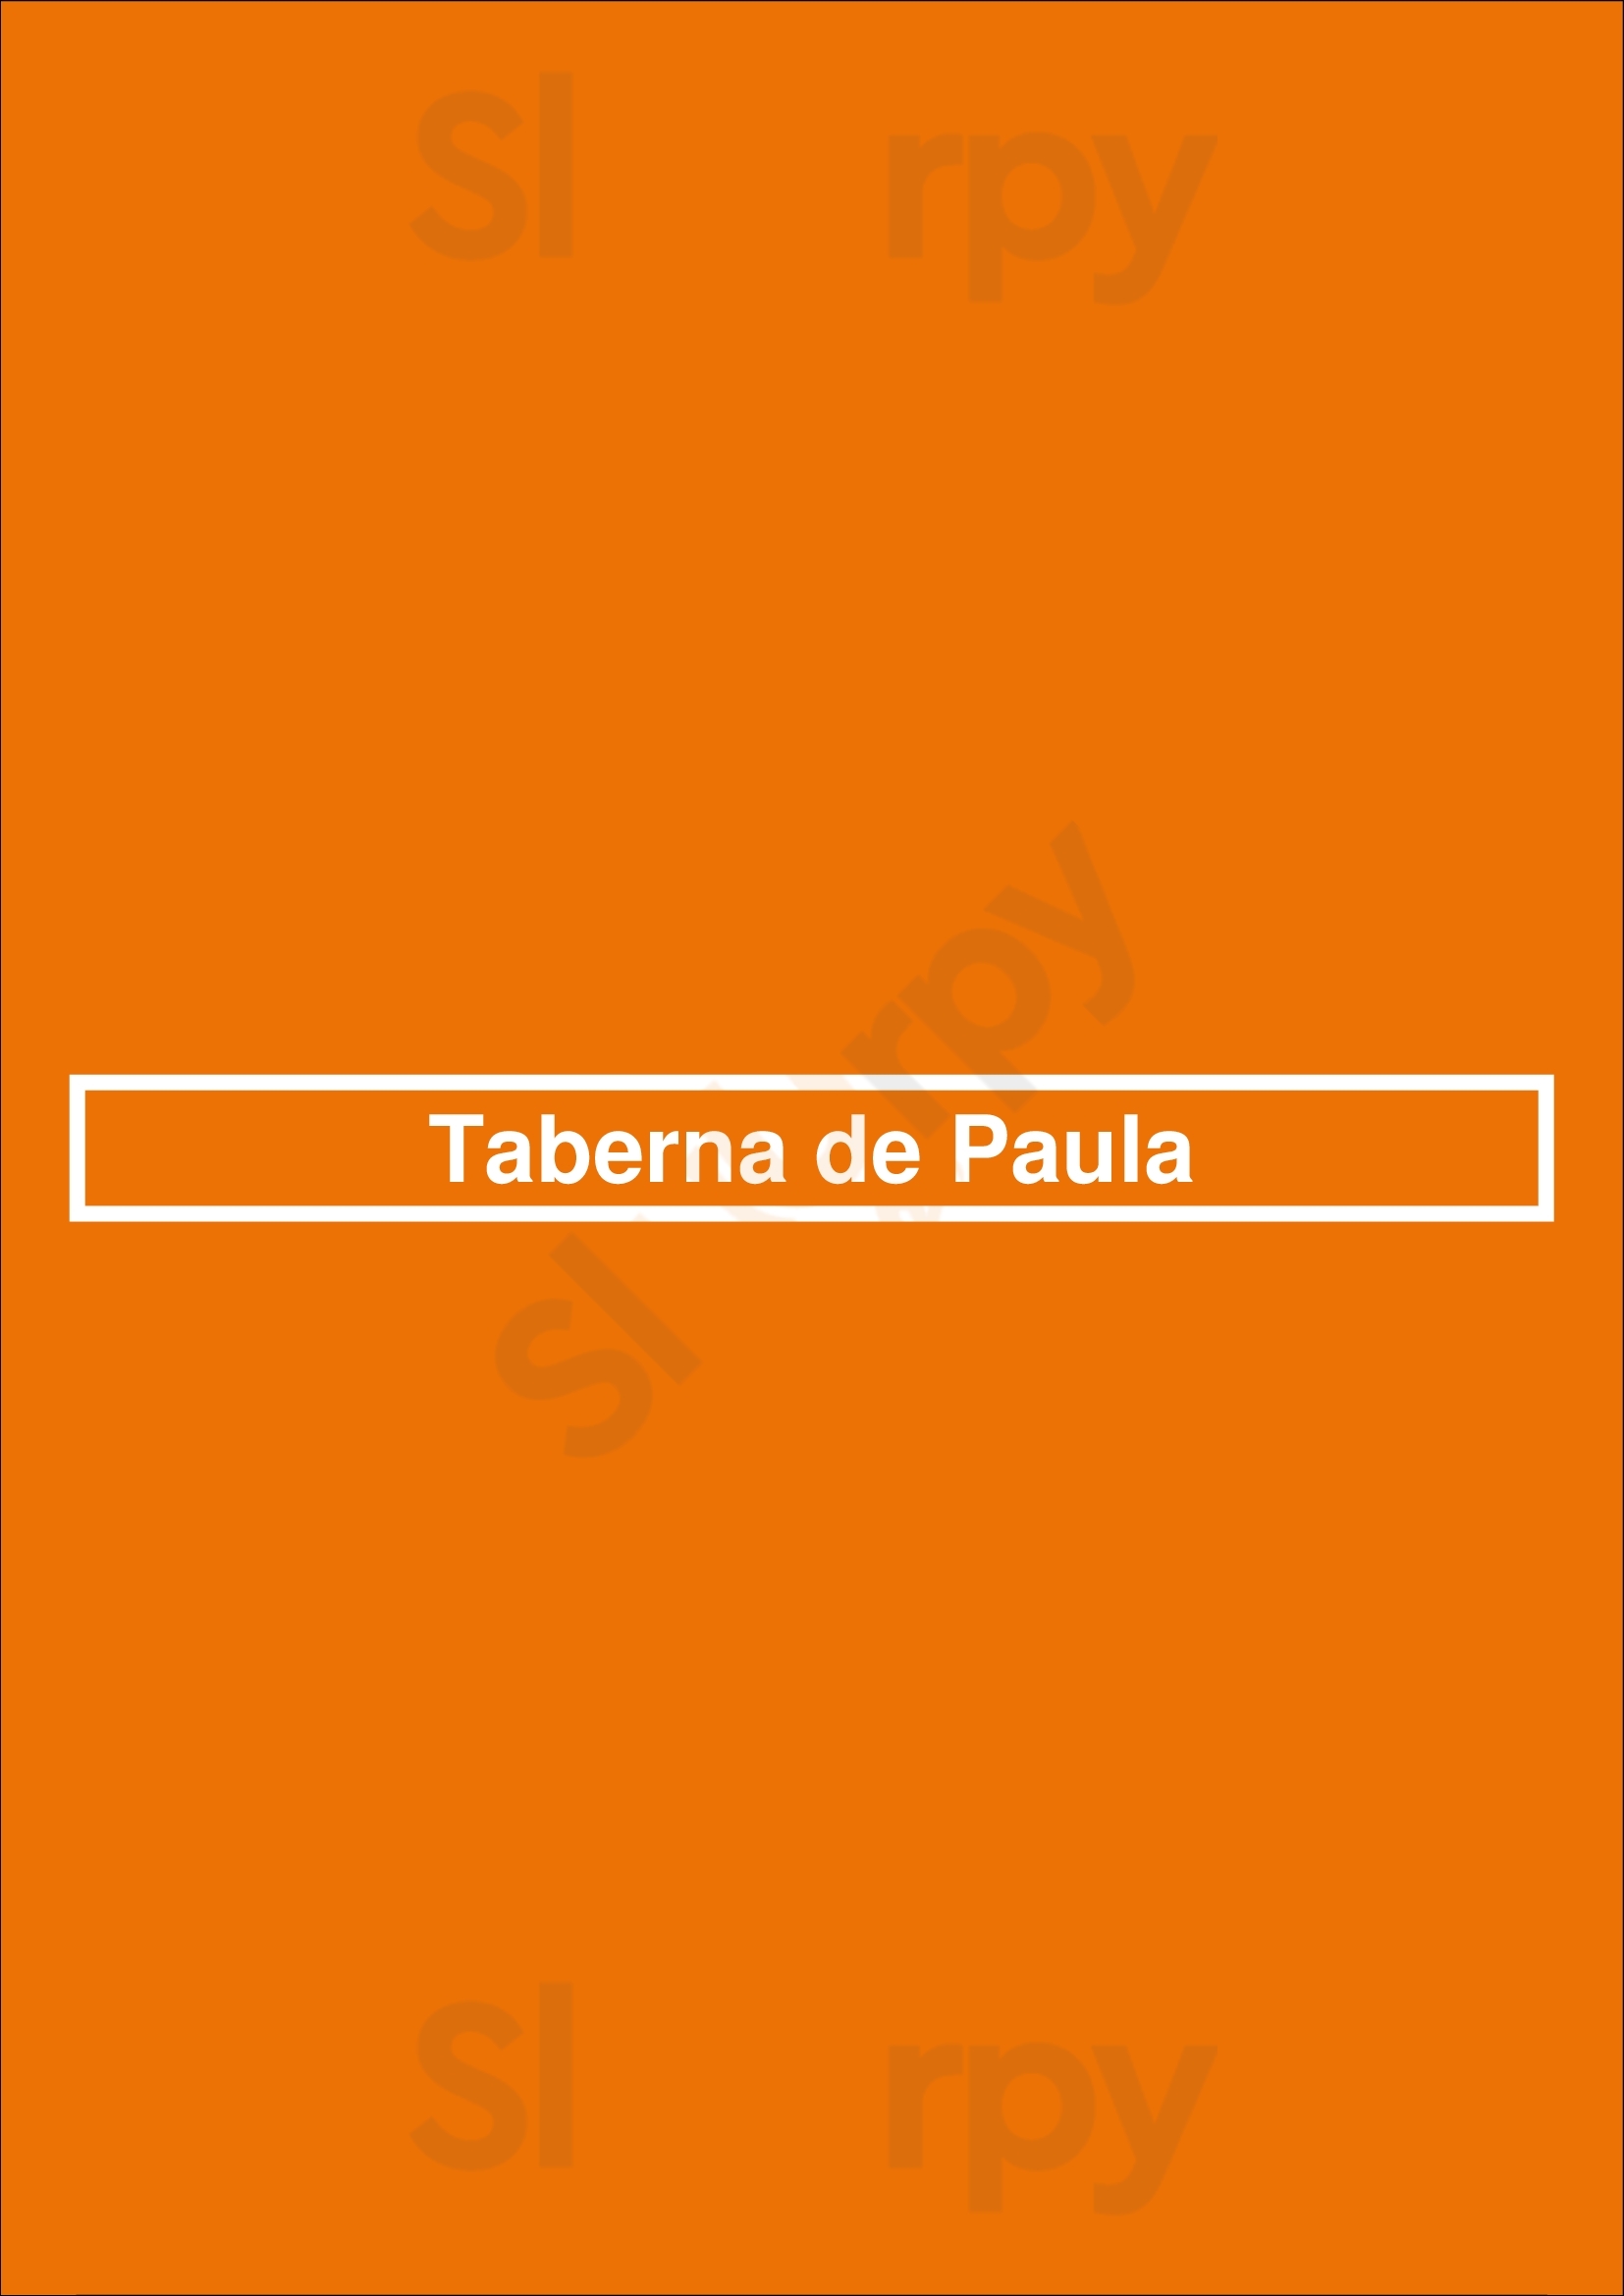 Taberna De Paula Madrid Menu - 1